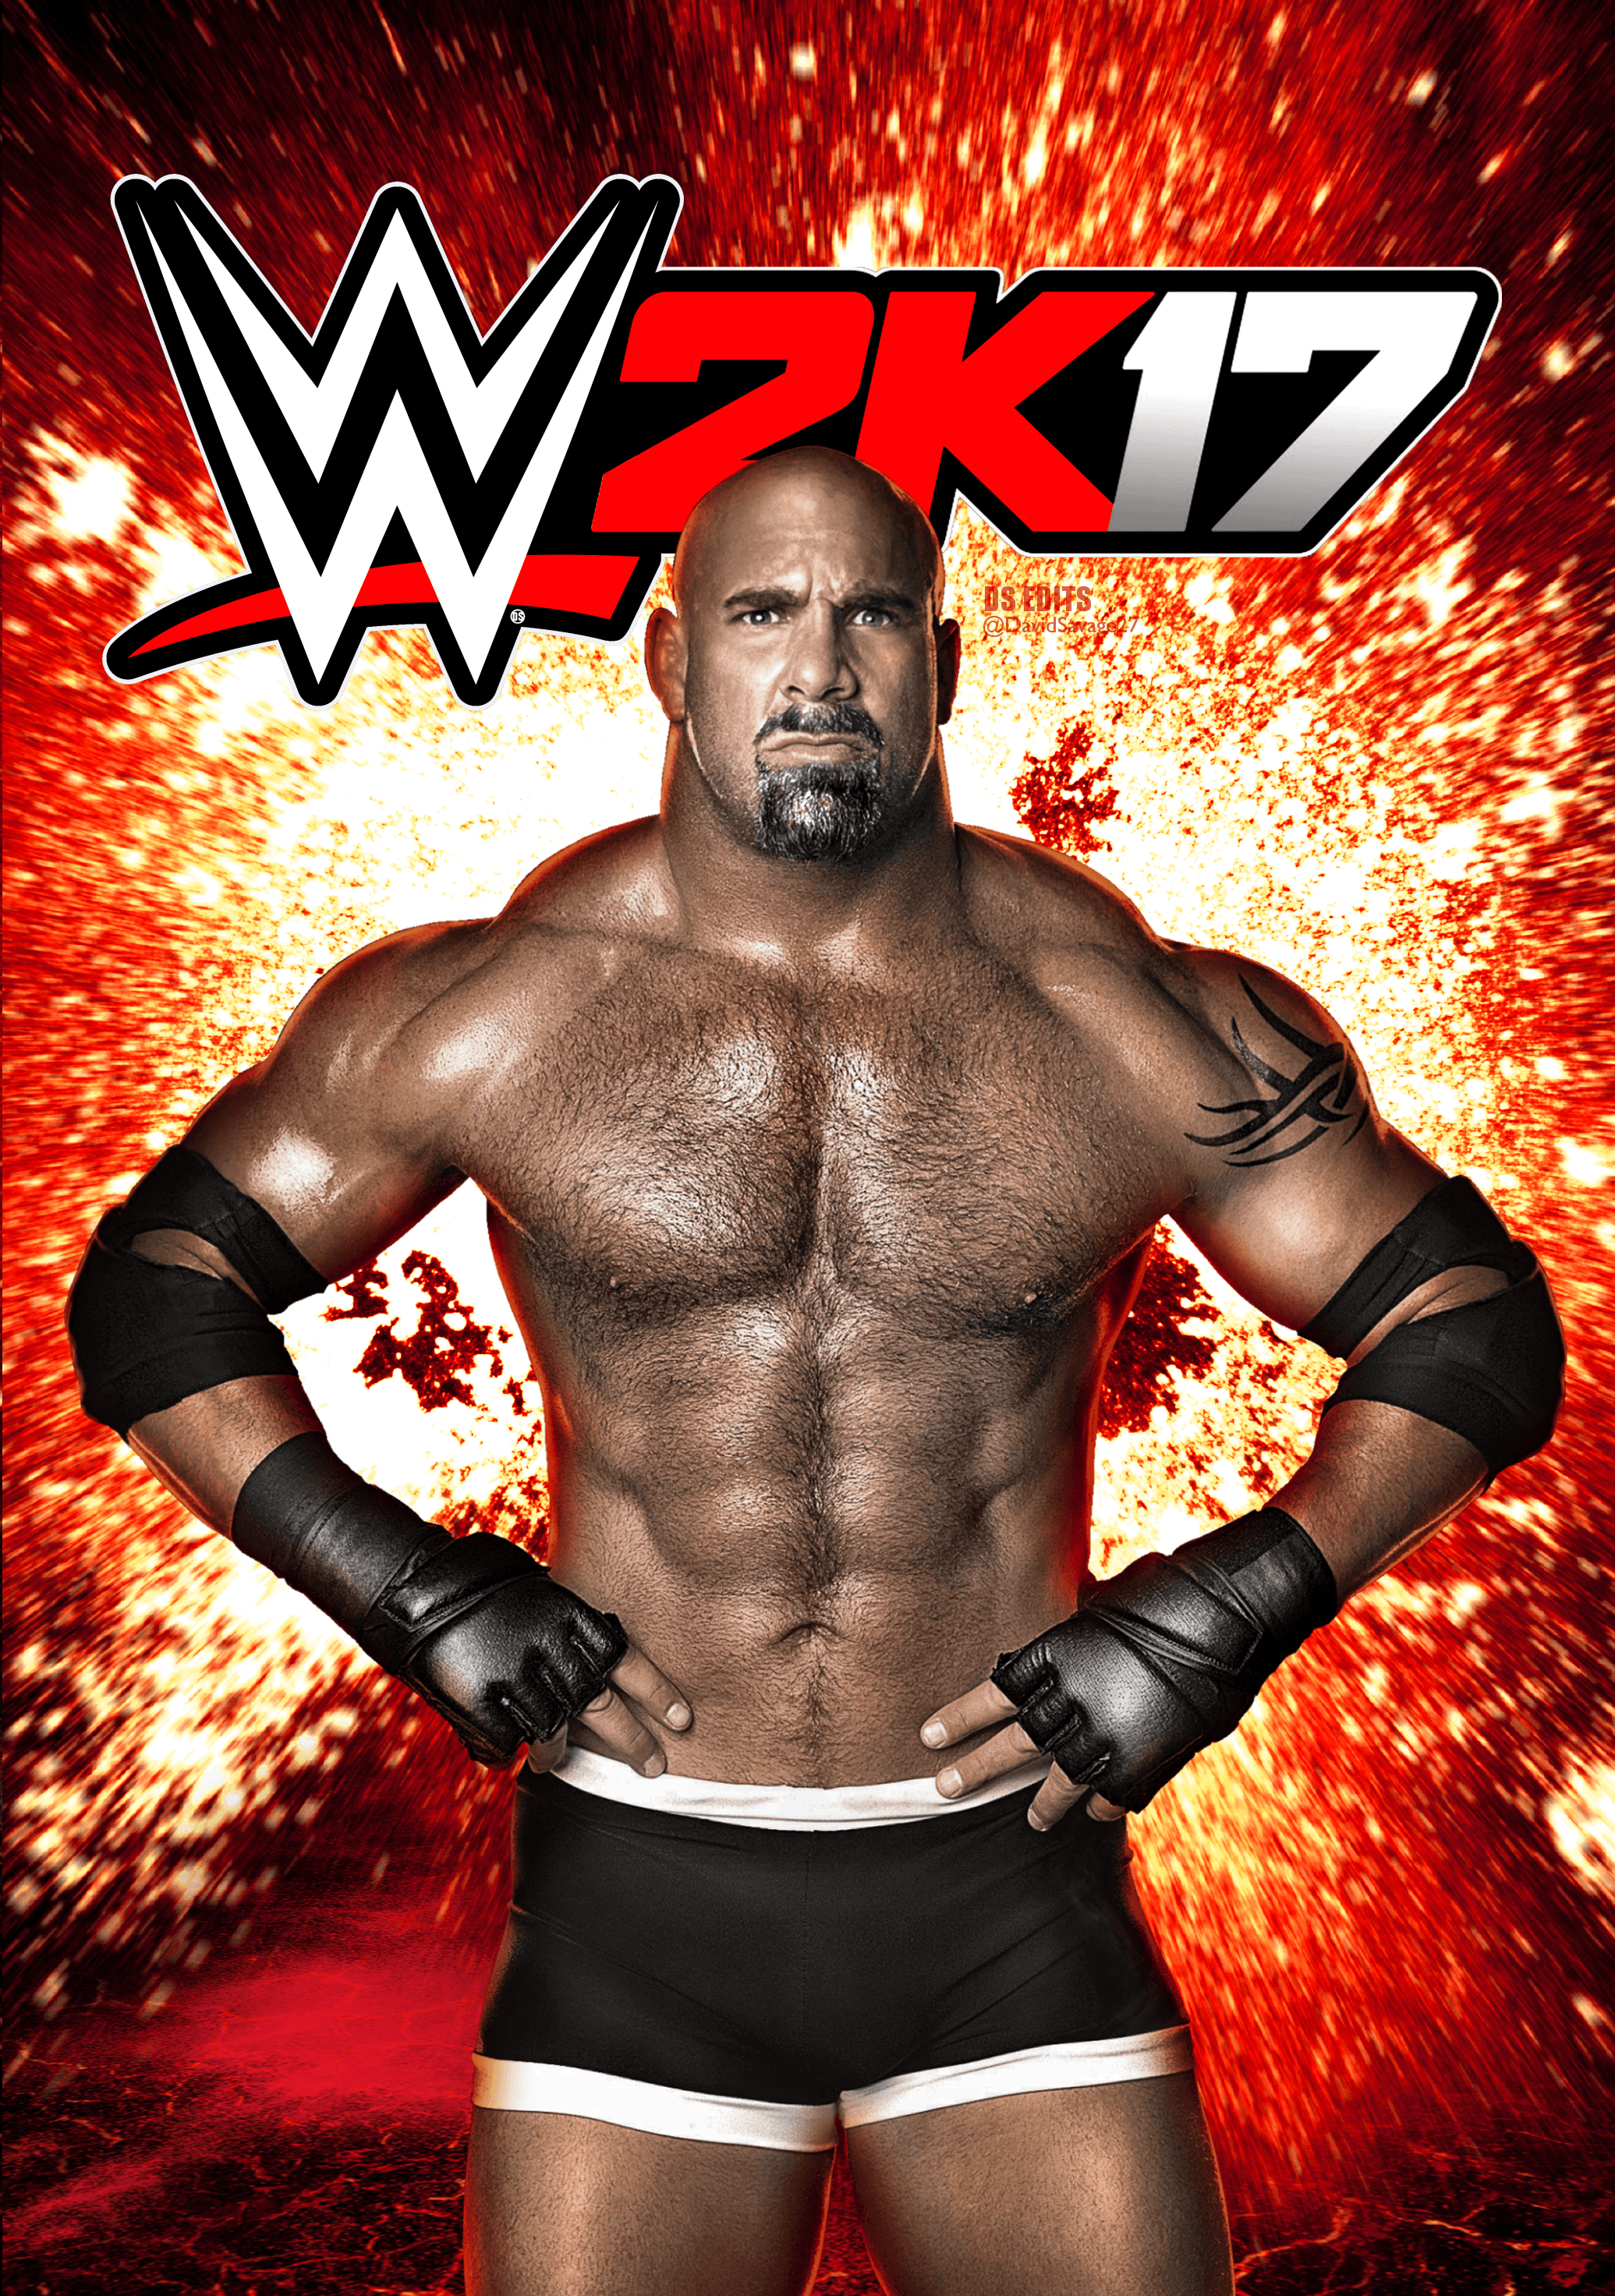 WWE 2K17 HD Wallpaper